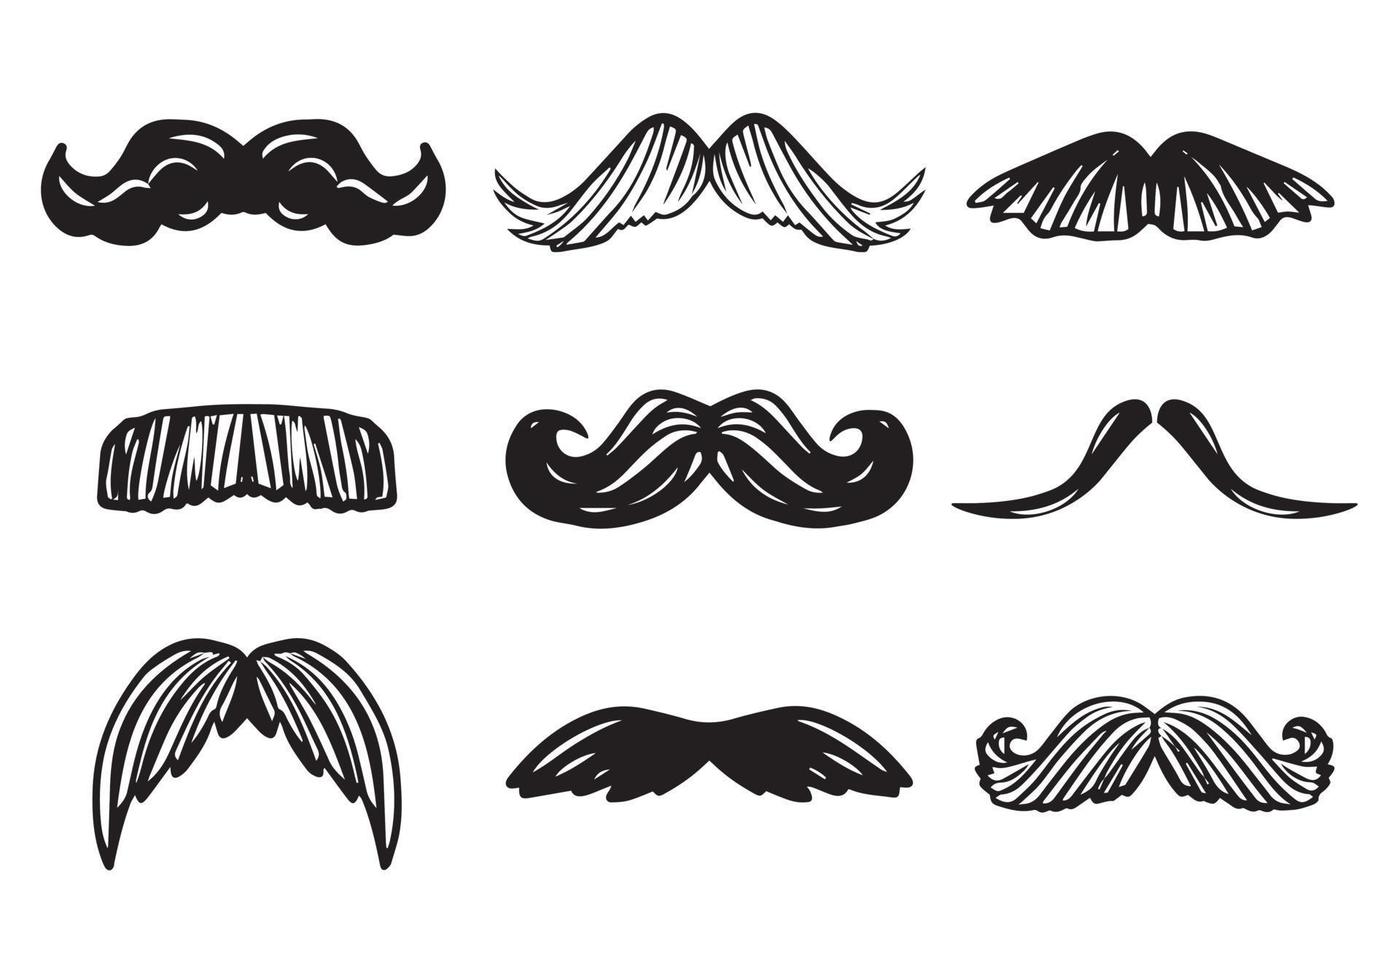 conjunto de bocetos de garabatos dibujados a mano de bigotes de diferentes formas y tipos. accesorio de hombre guapo vector